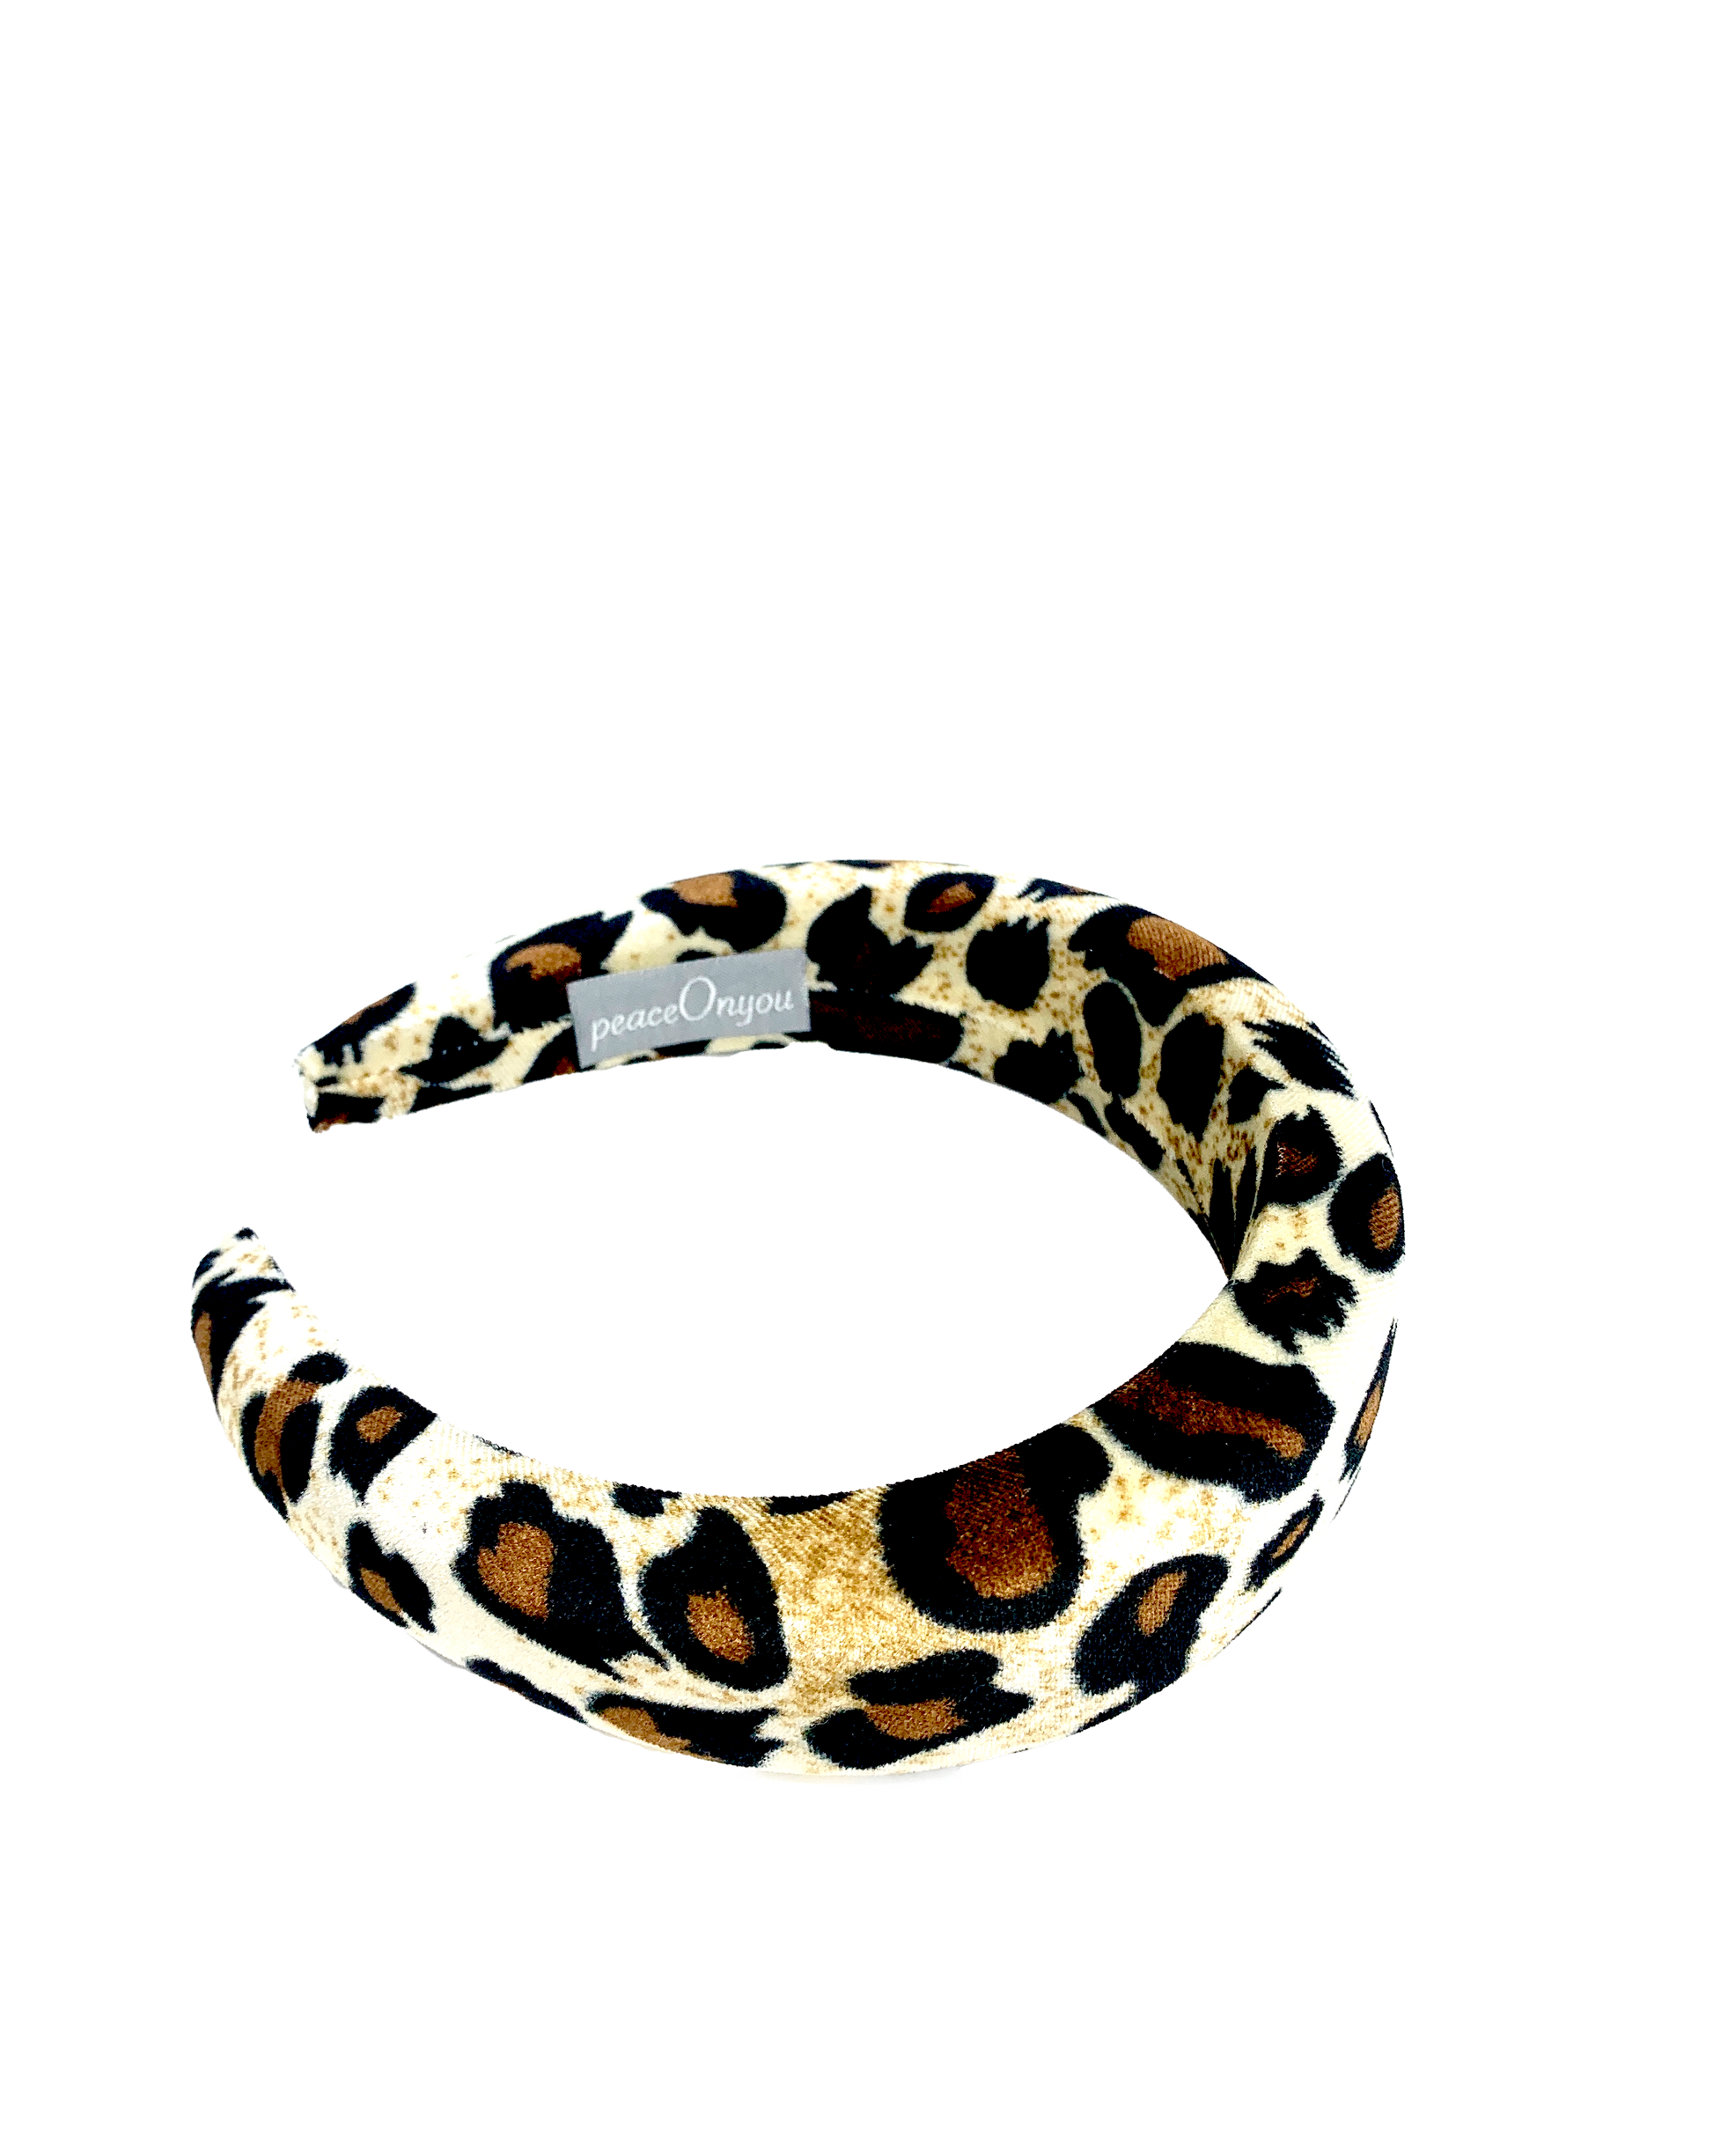 Padded velvet headband in leopard pattern